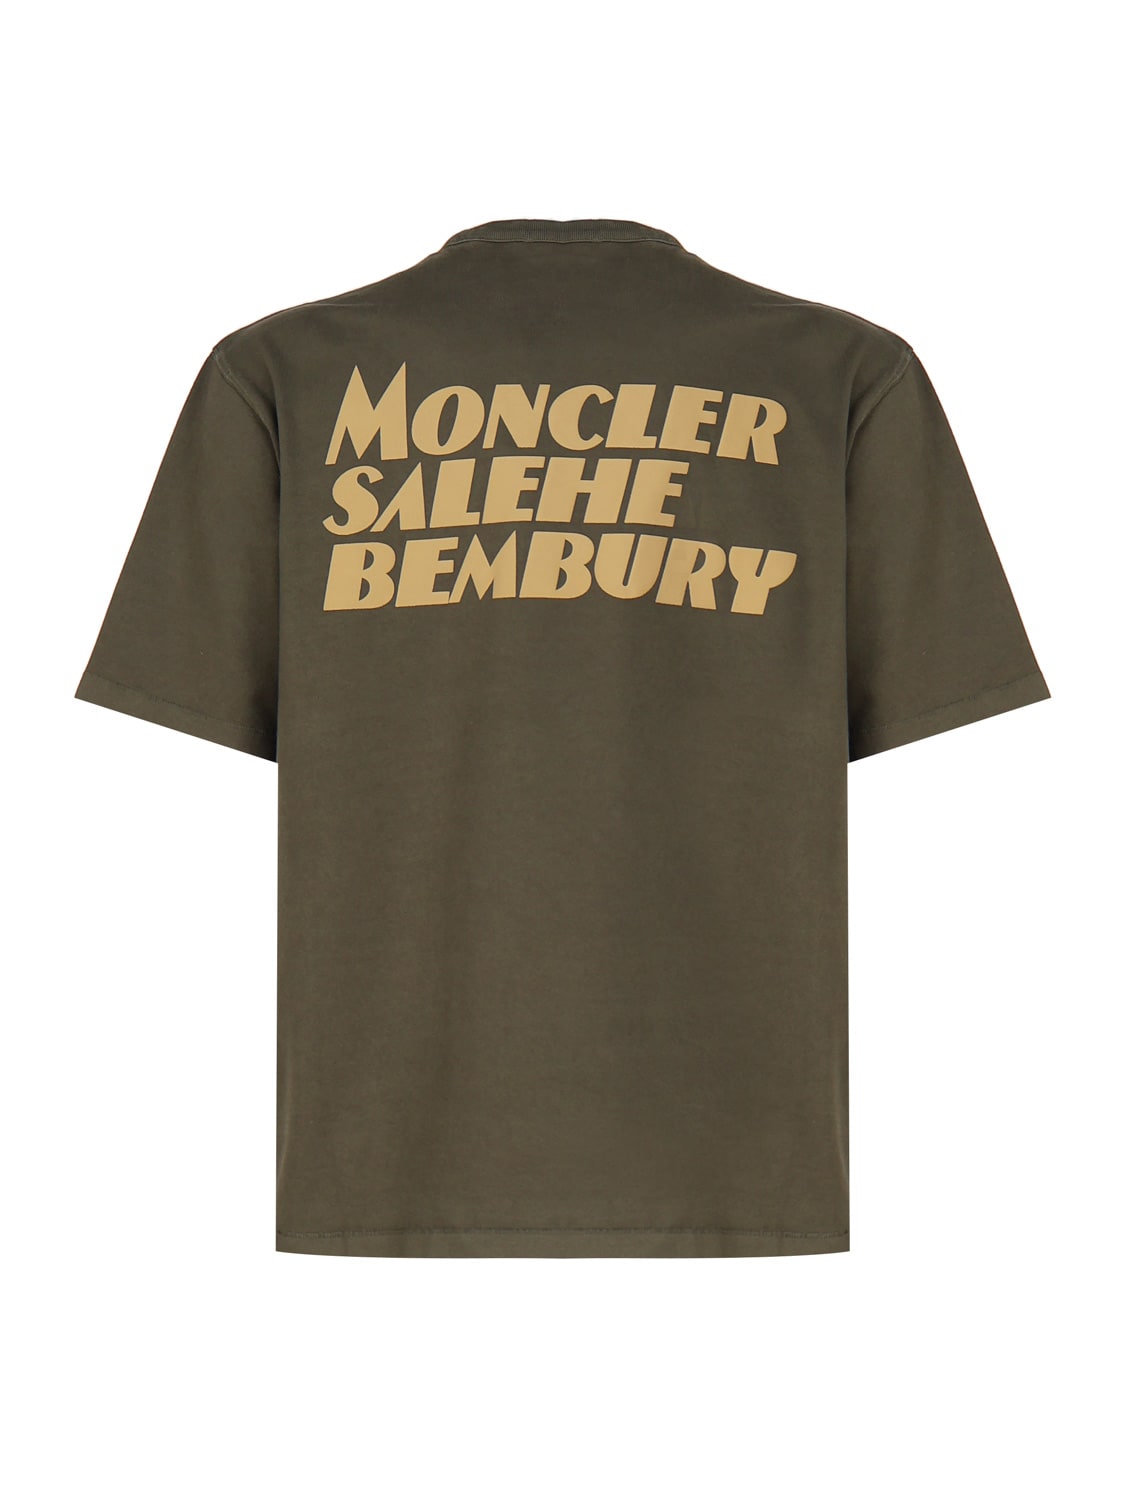 Shop Moncler Genius Moncler X Salehe Bembury T-shirt In Green